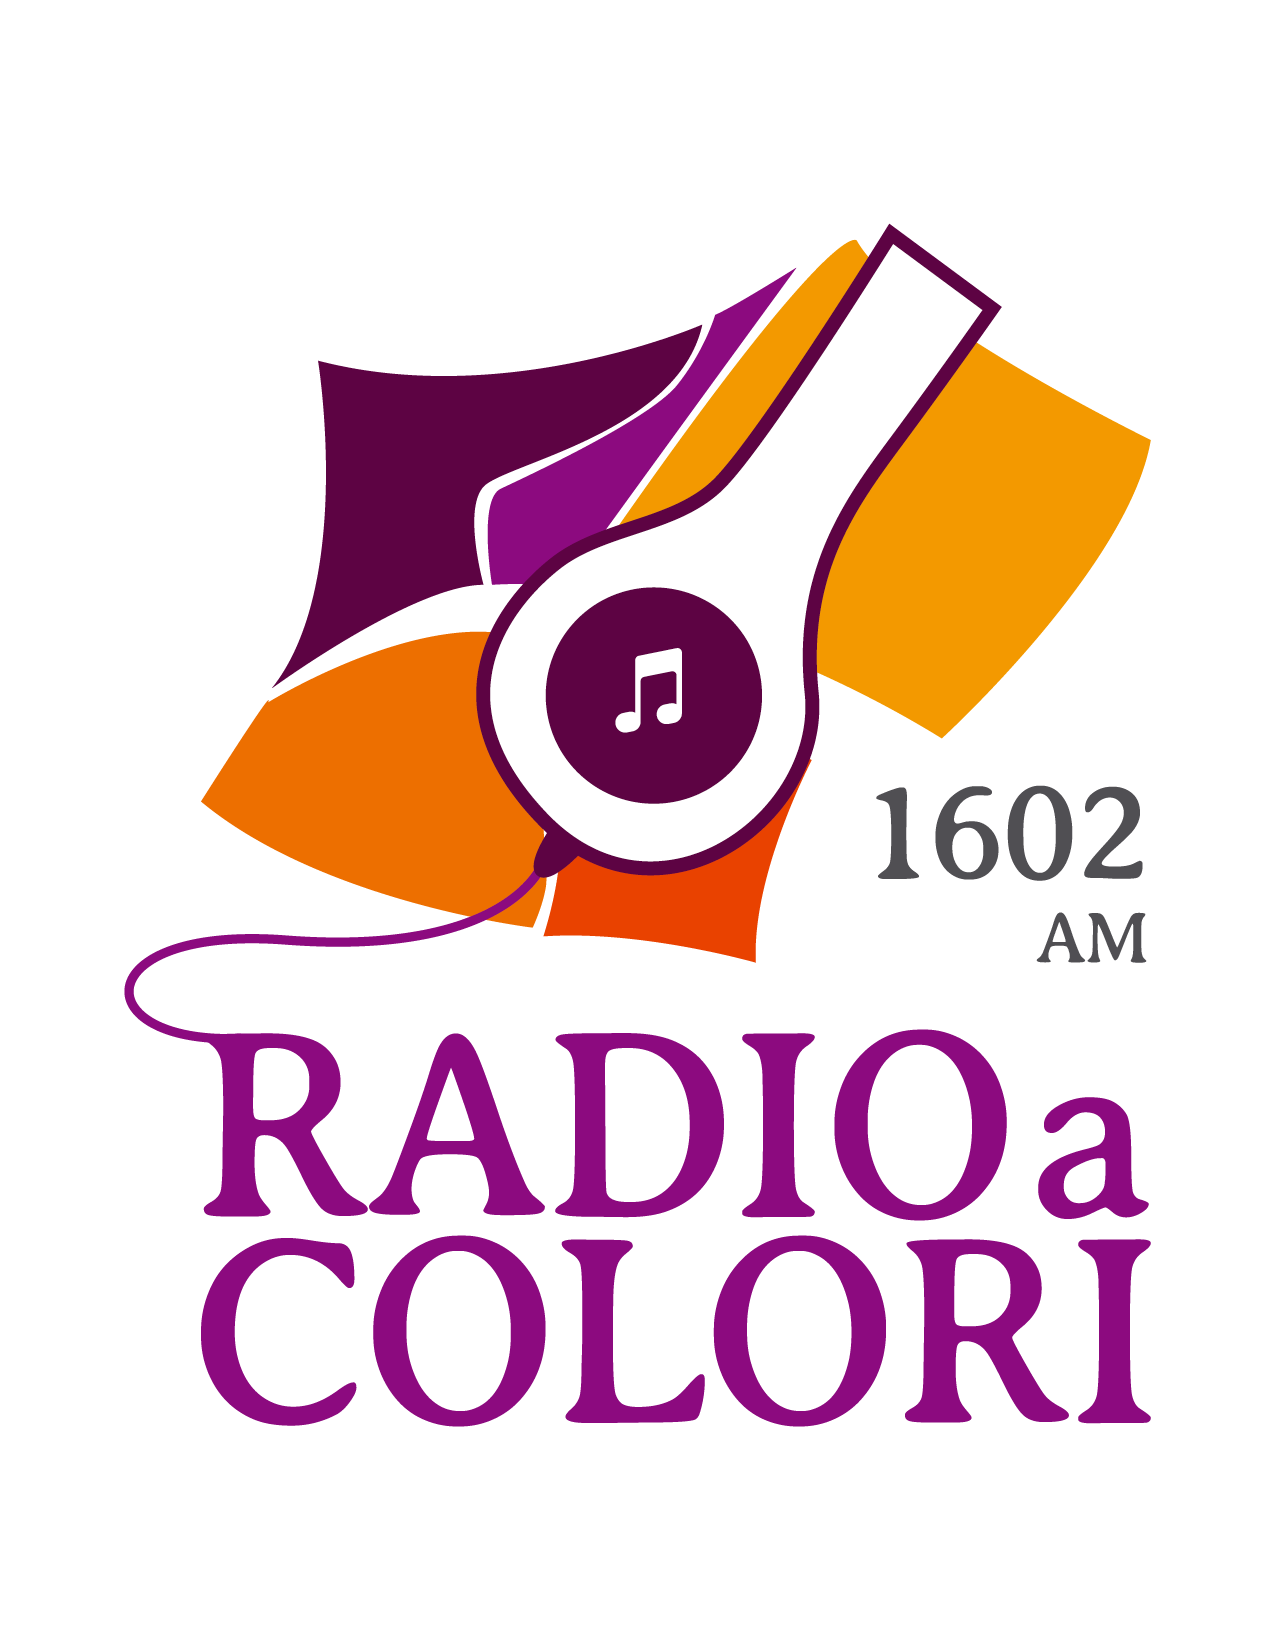 Radio a colori 1602 kHz